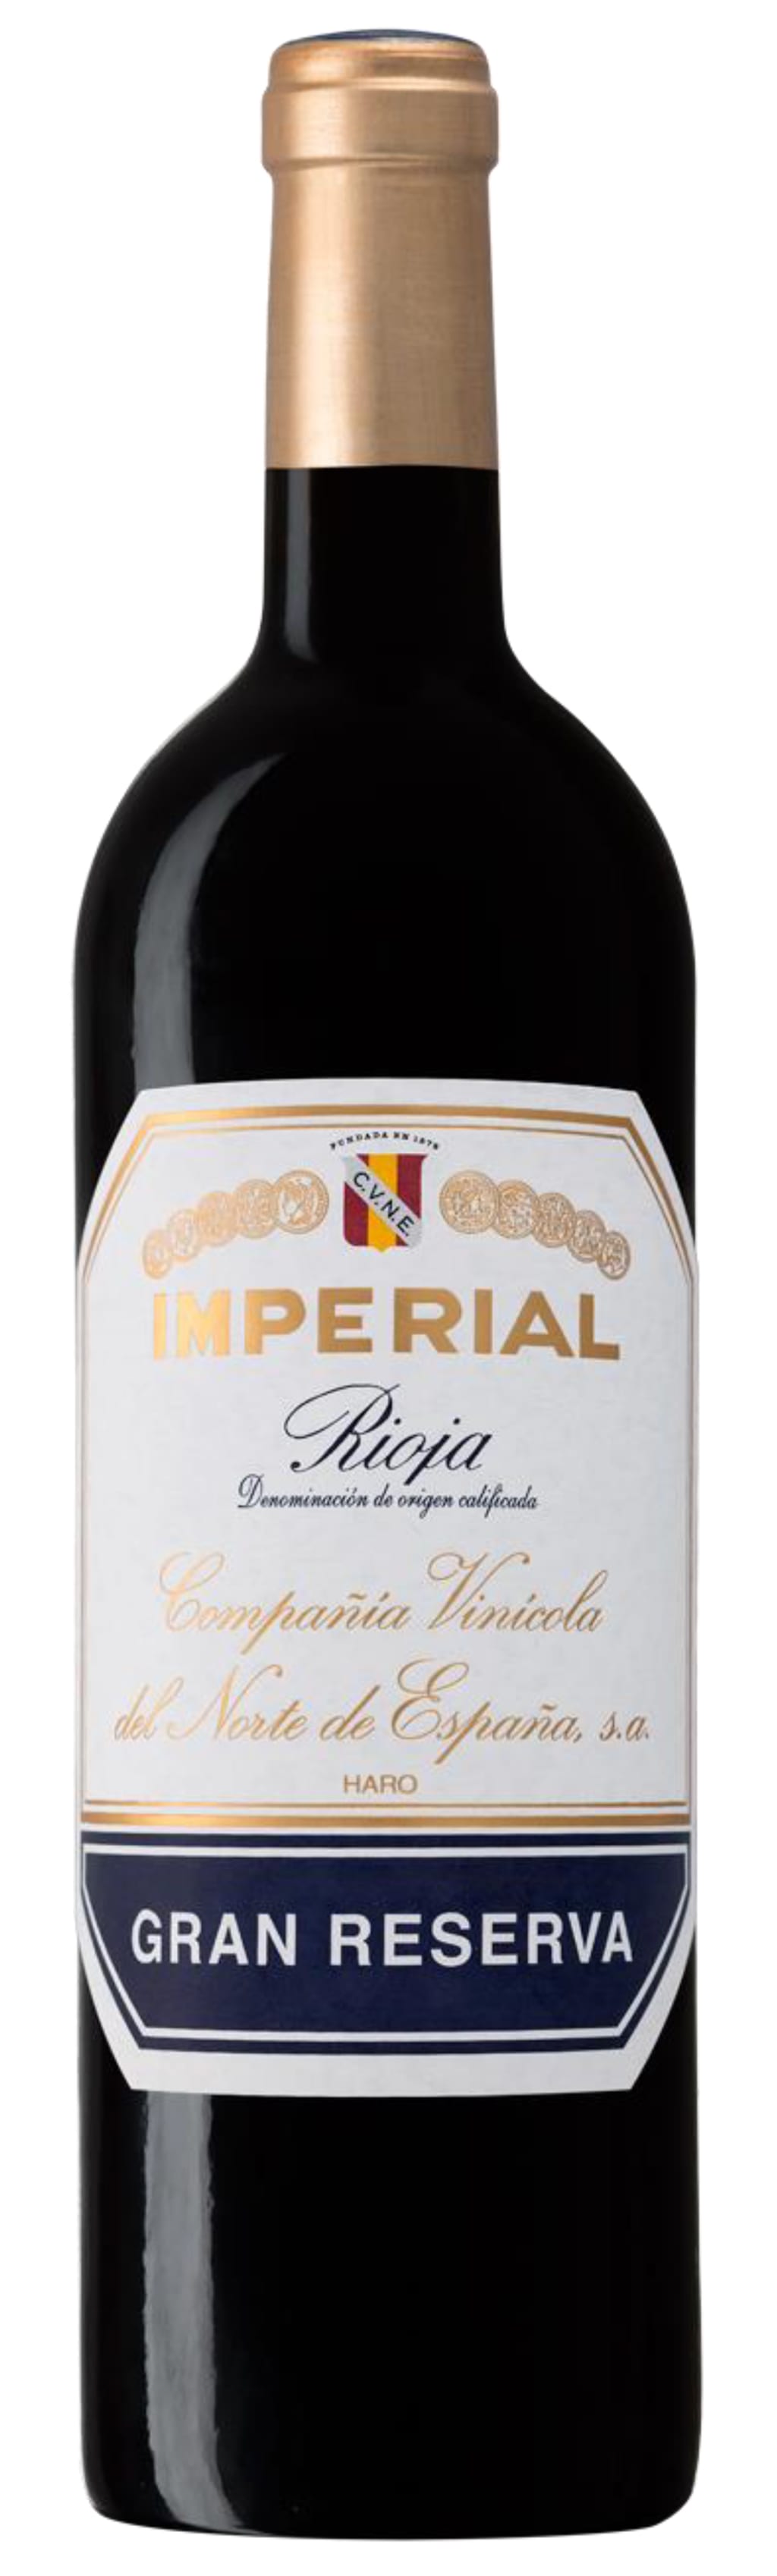 Rioja Gran Reserva, Imperial, CVNE 2015